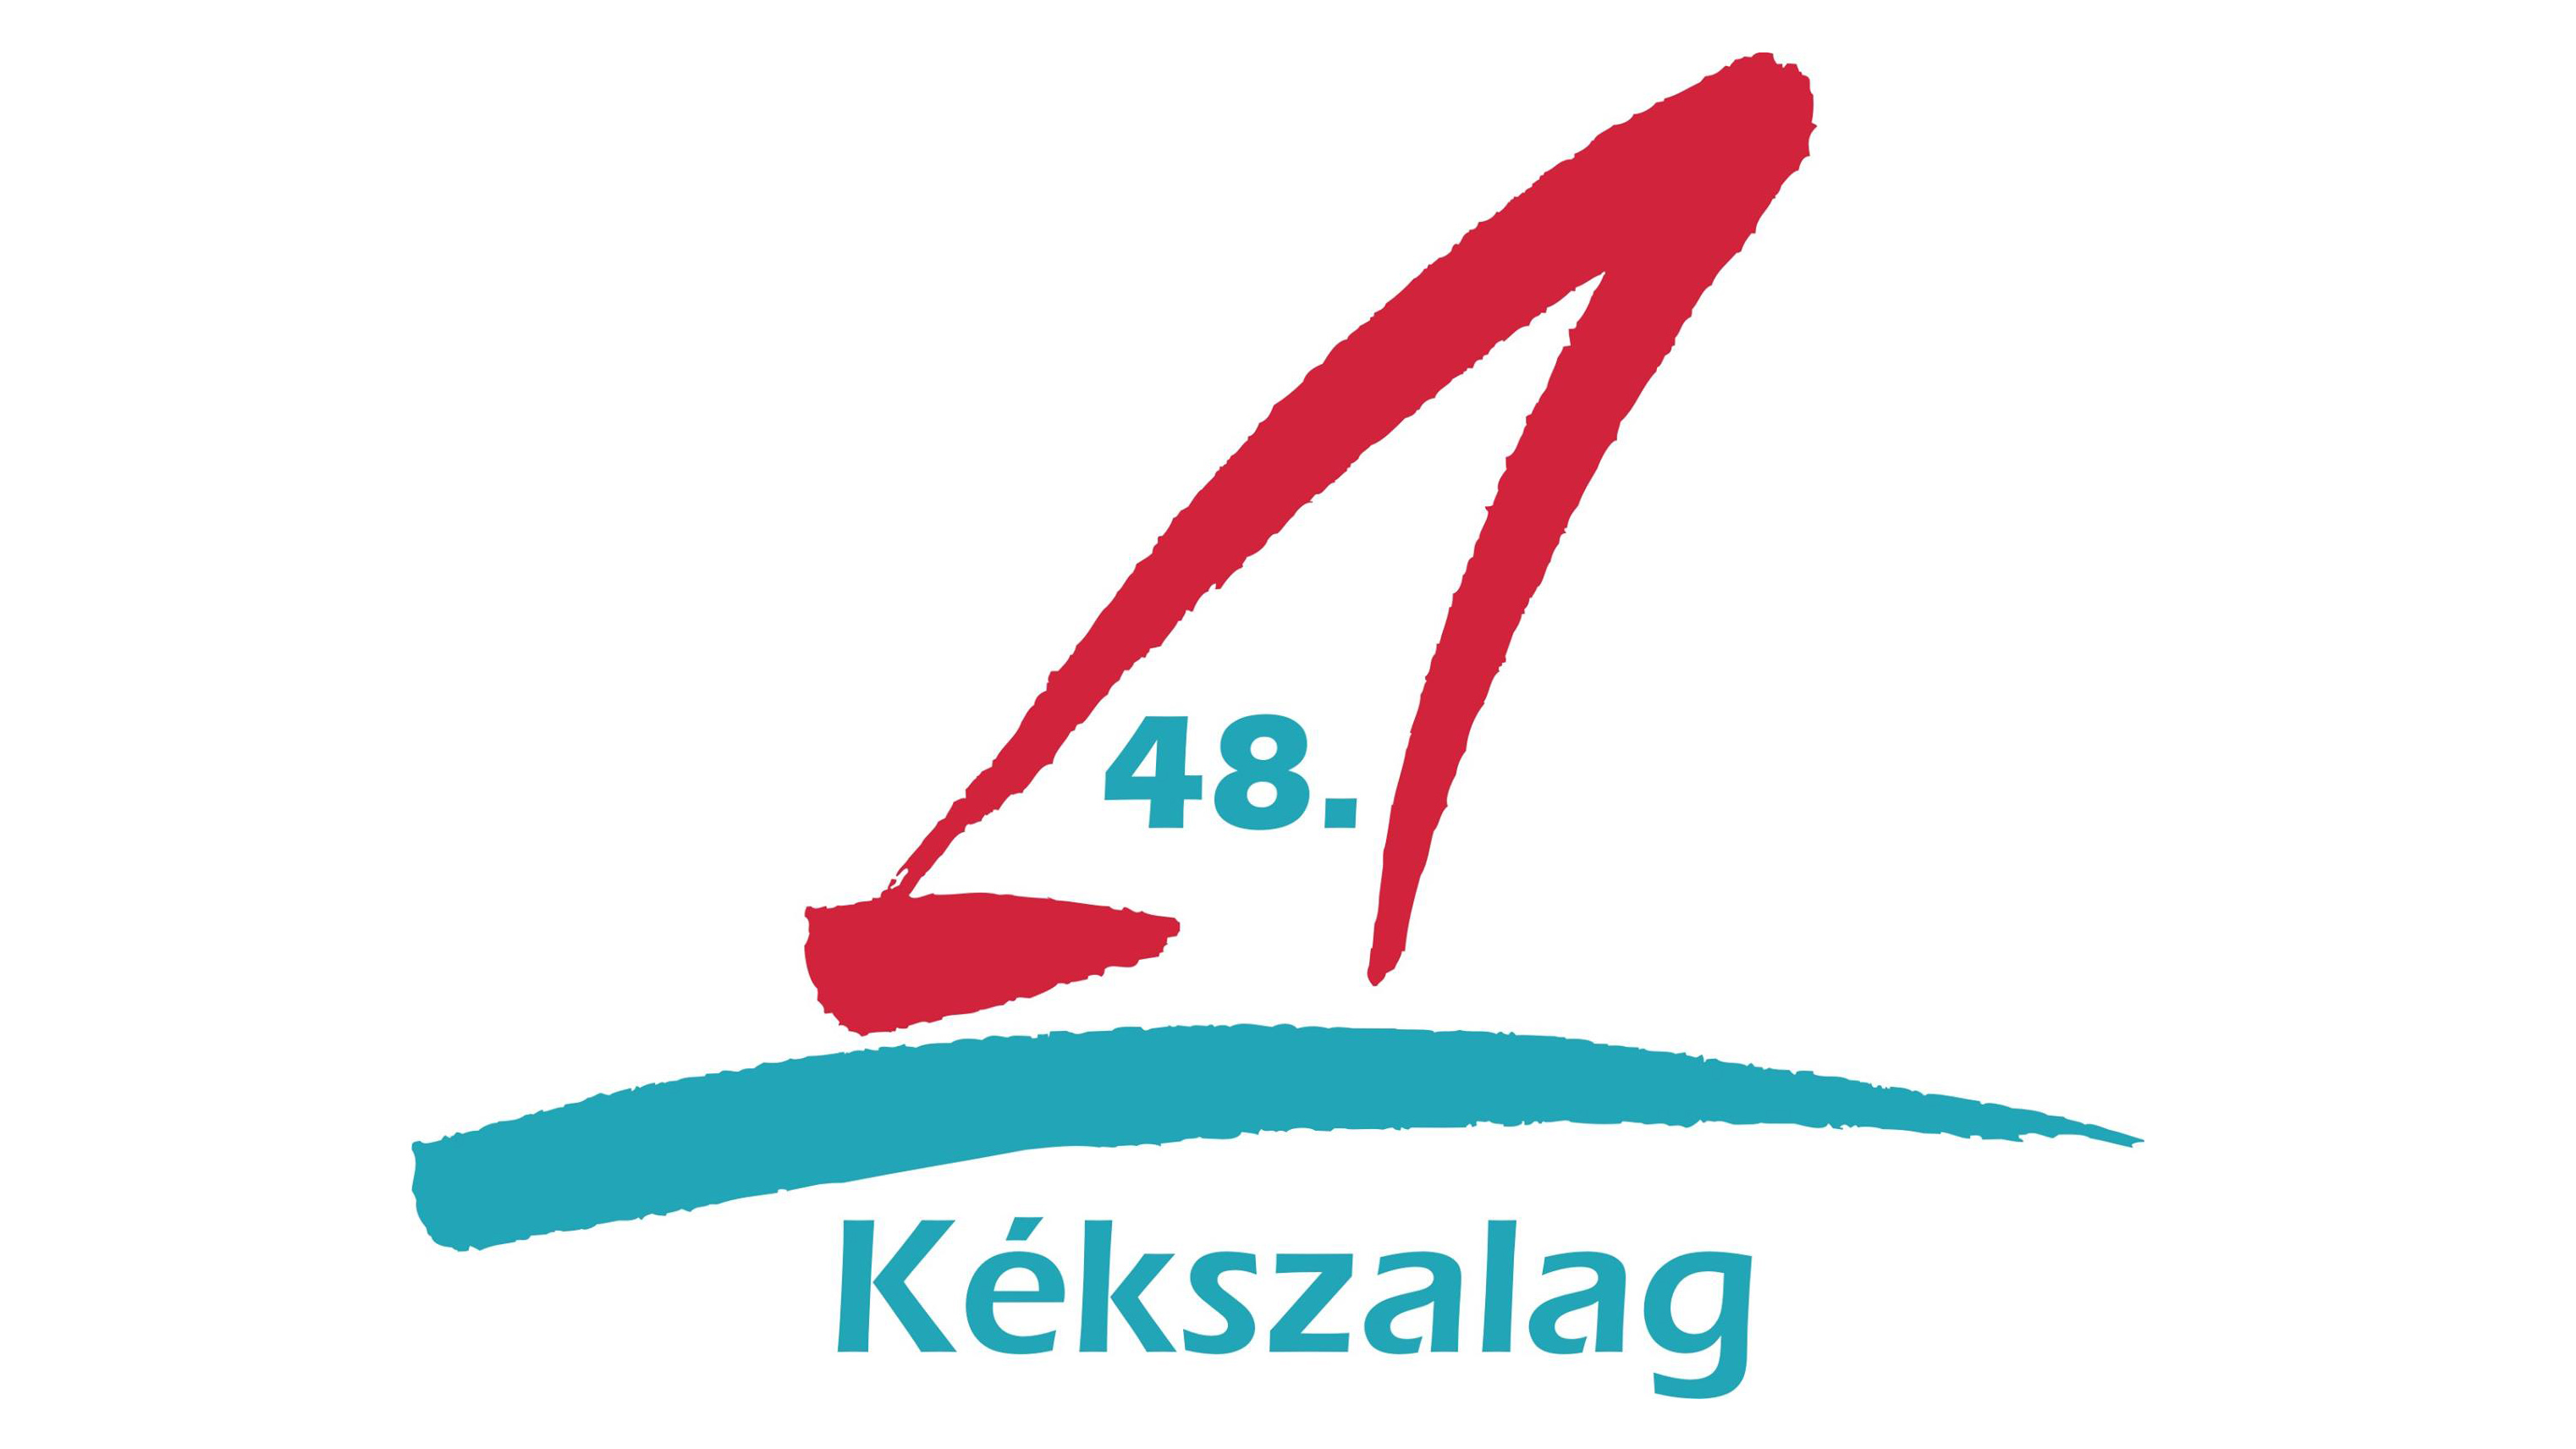 kekszalag-logo-vitorlasverseny-balaton-hajozashu